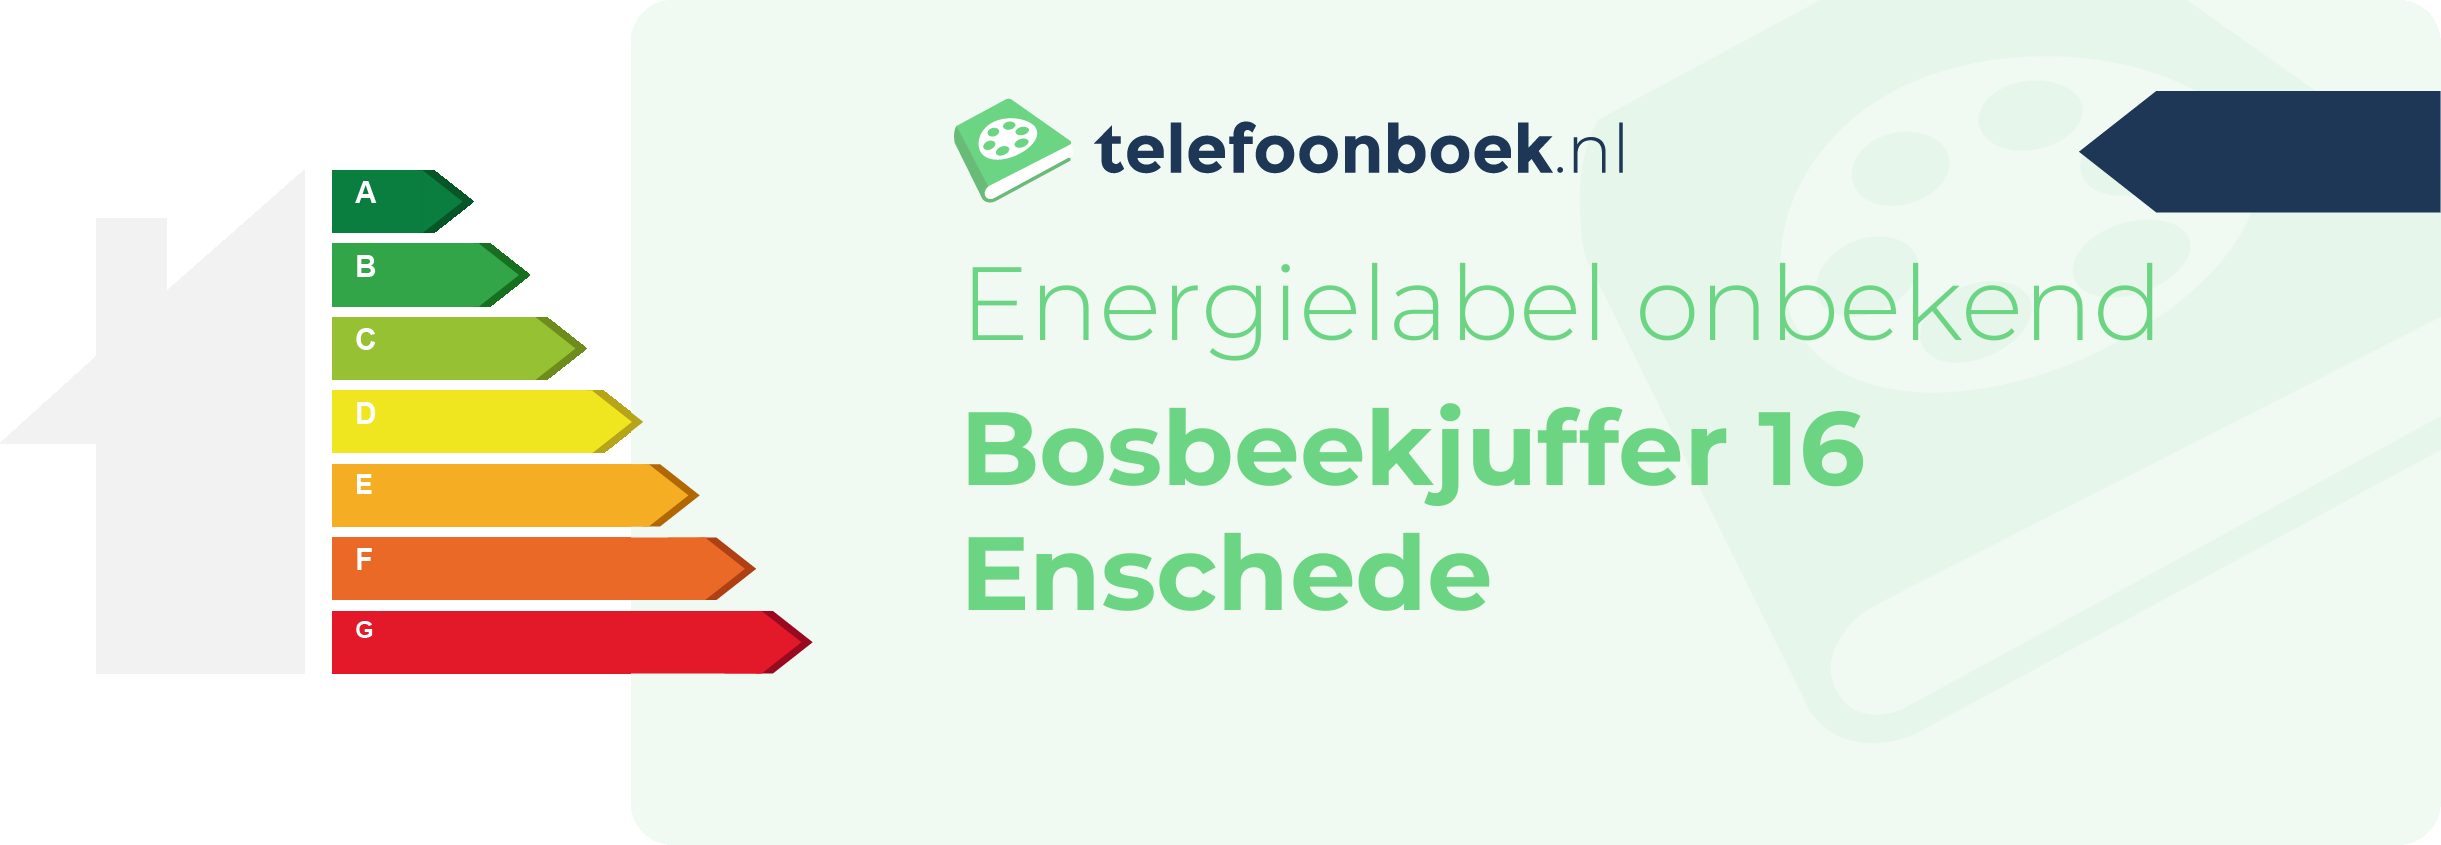 Energielabel Bosbeekjuffer 16 Enschede